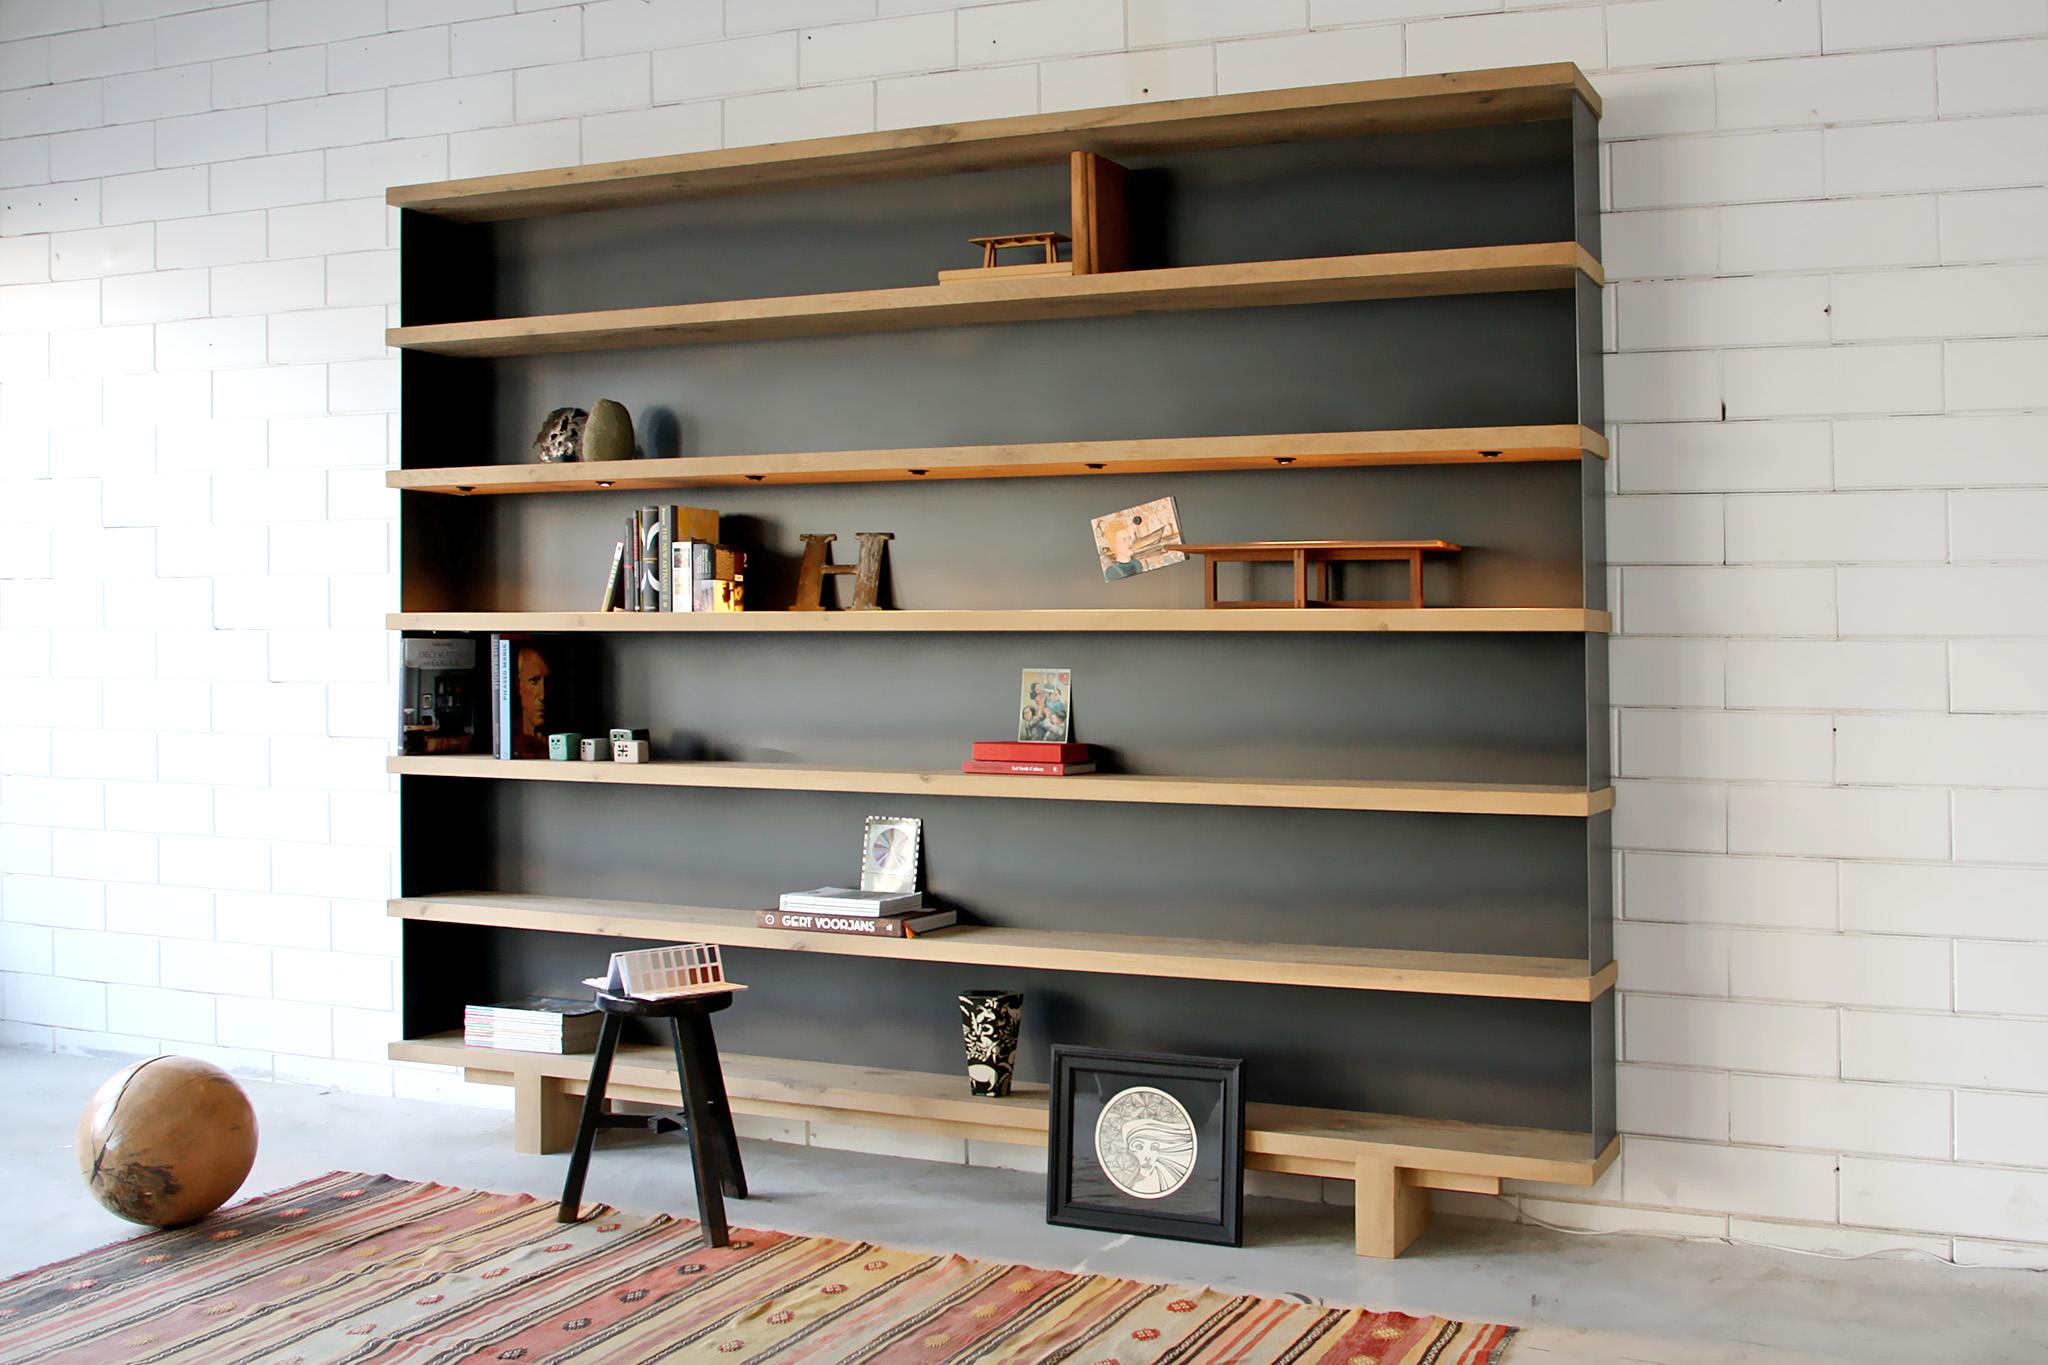 boekenkast / ontwerp uit 2014 van Joeri Koolhoven